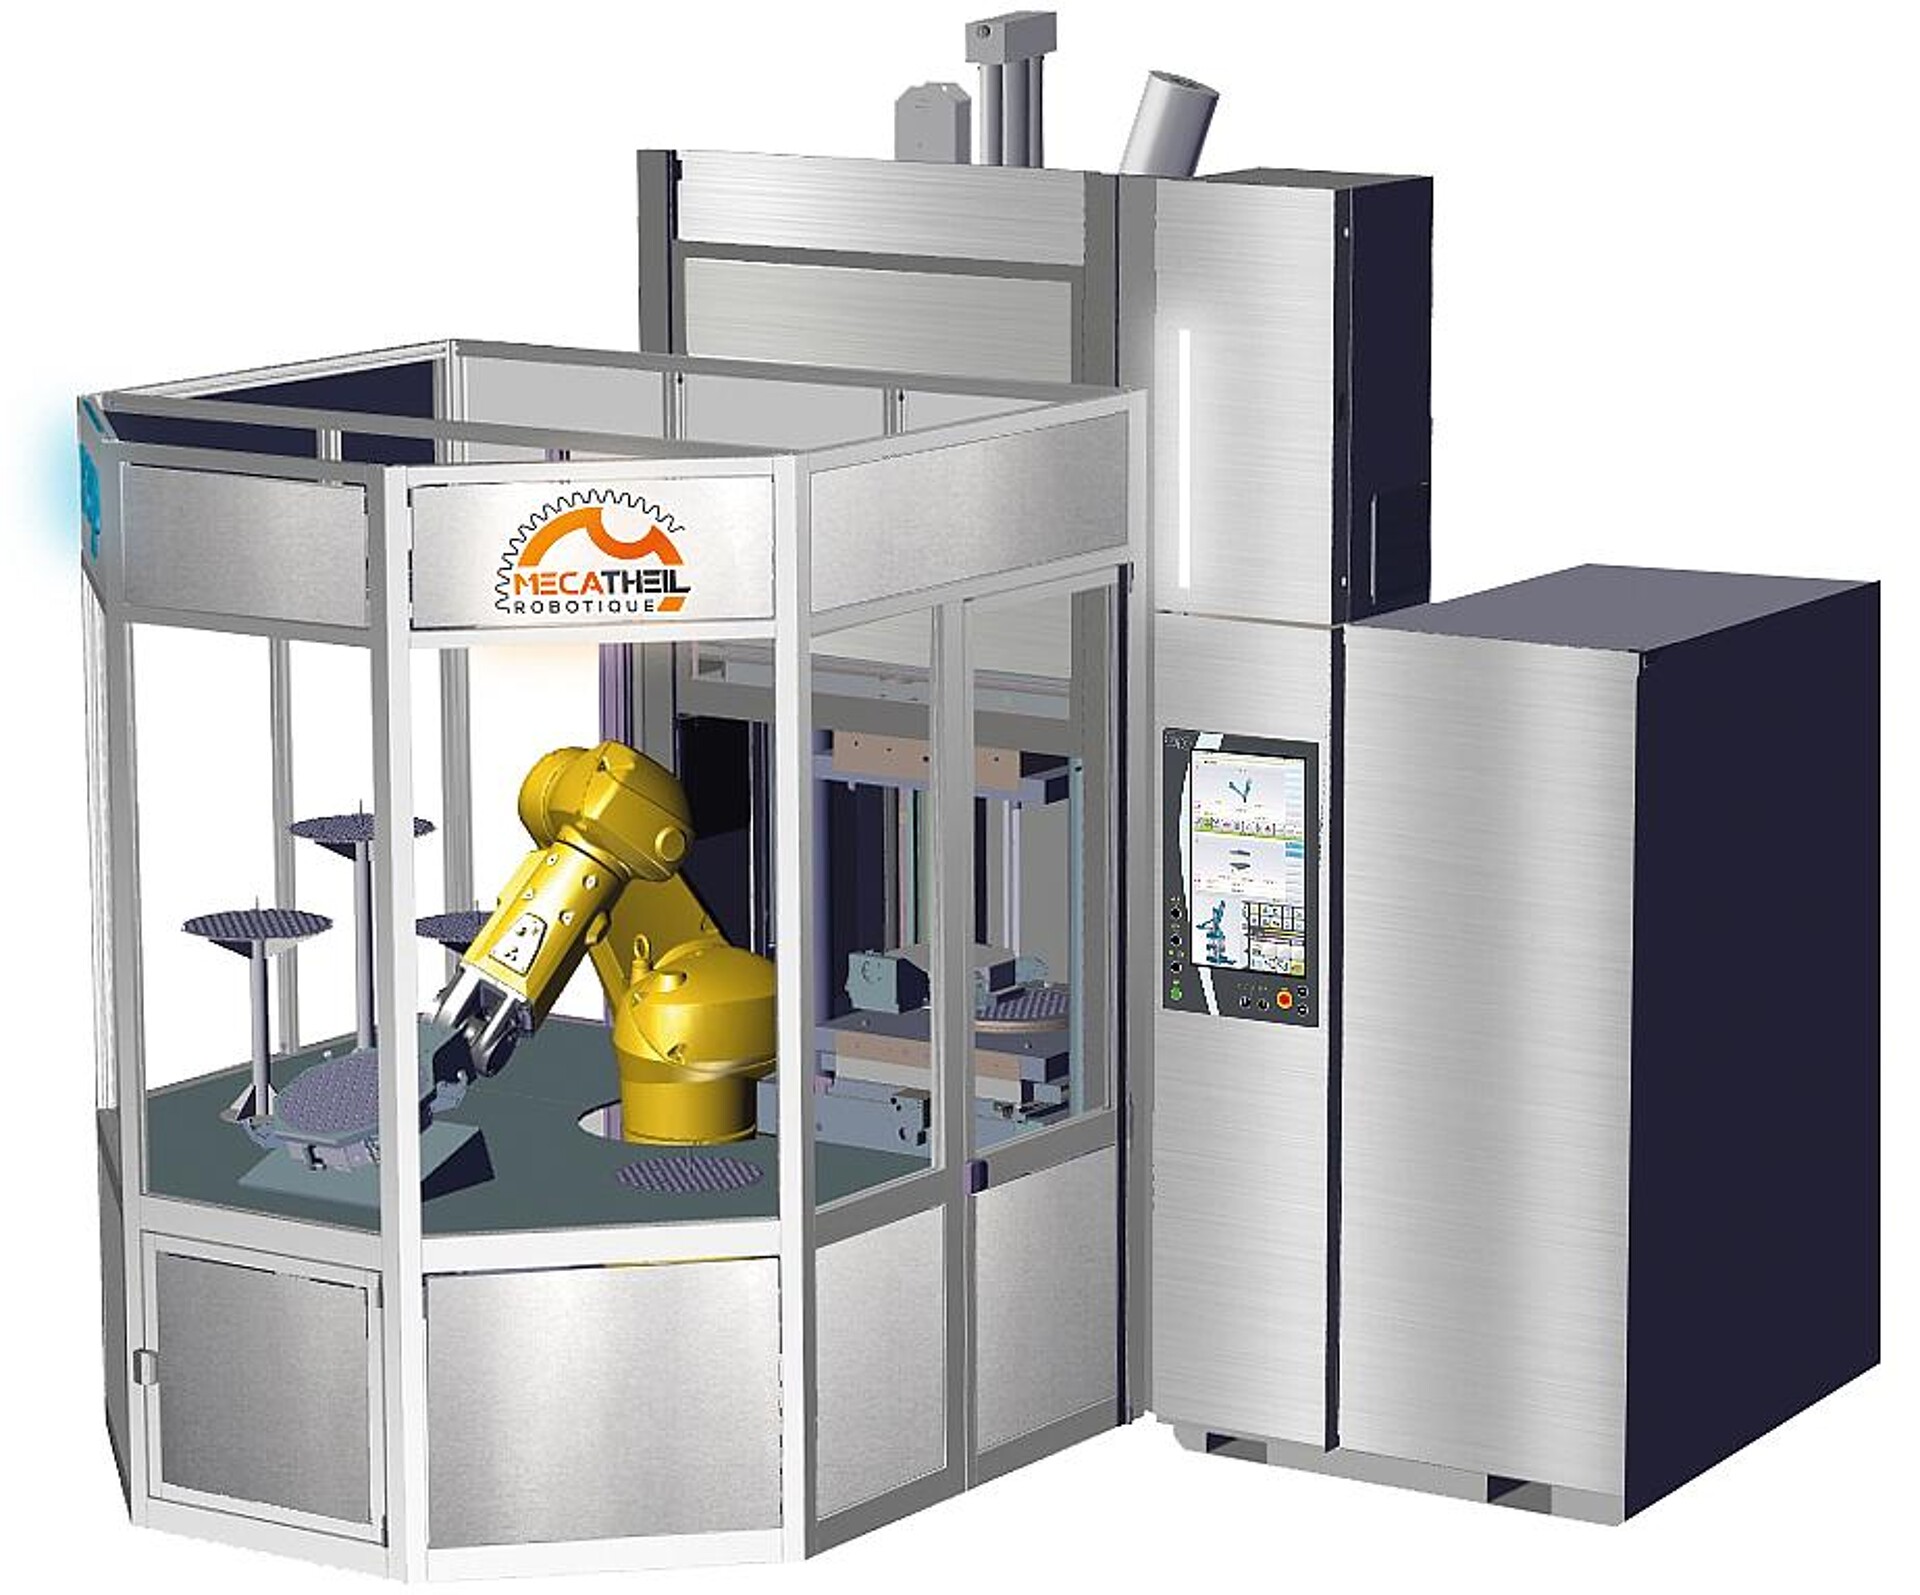 Die vertikale Spritzgießmaschine W510 wird in einer automatisierten Produktionszelle für einen Medizinartikel gezeigt. (Foto: REP)